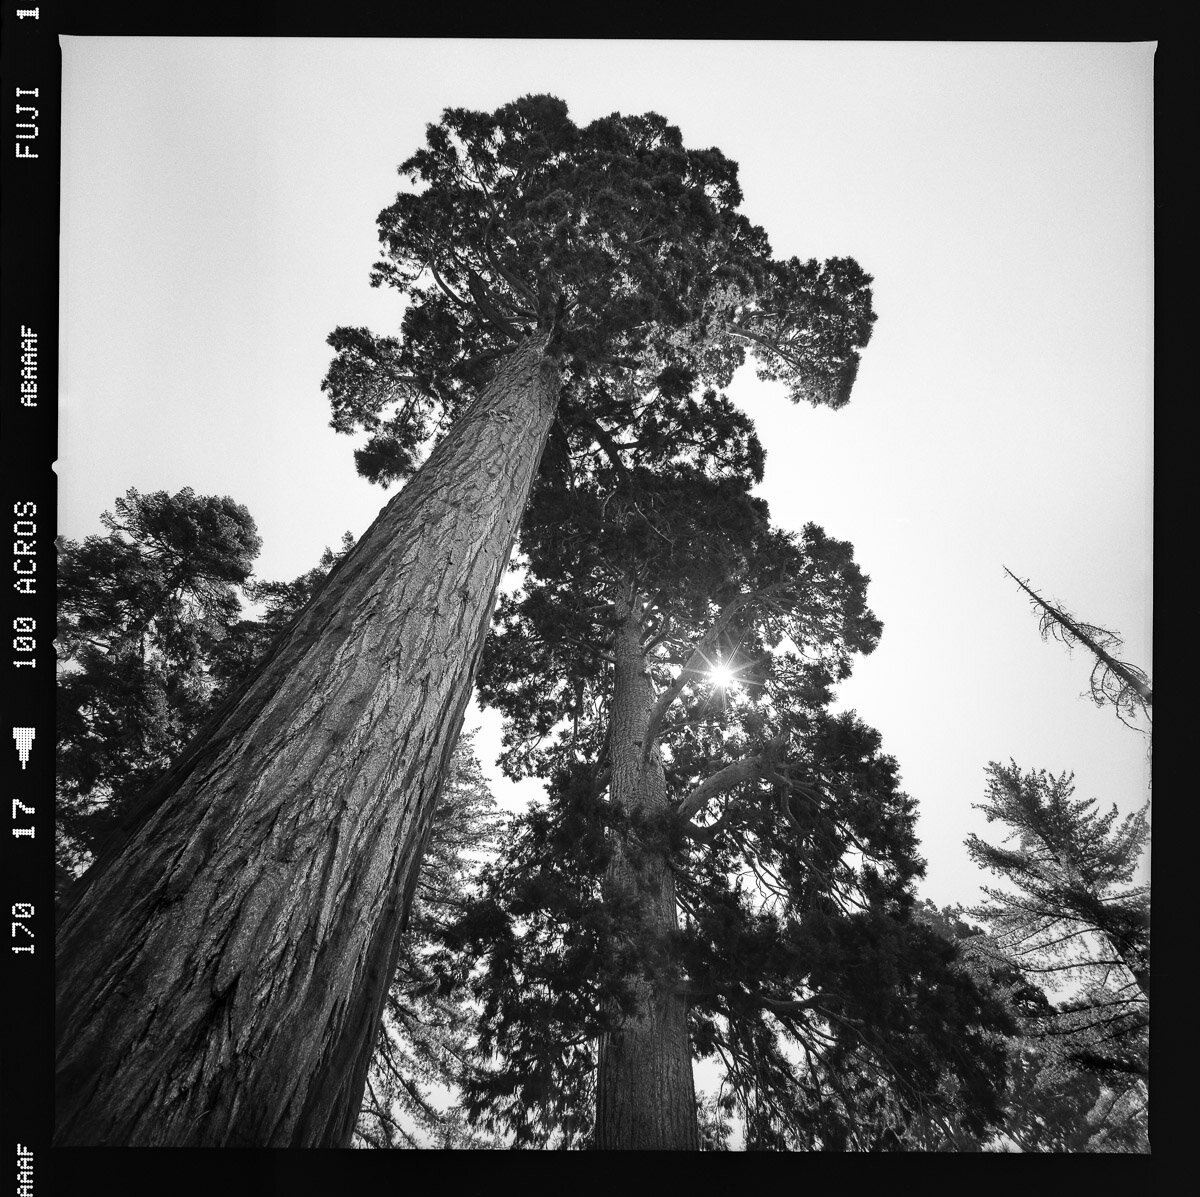 fineart-sequoia-tree--film-bw-1.jpg